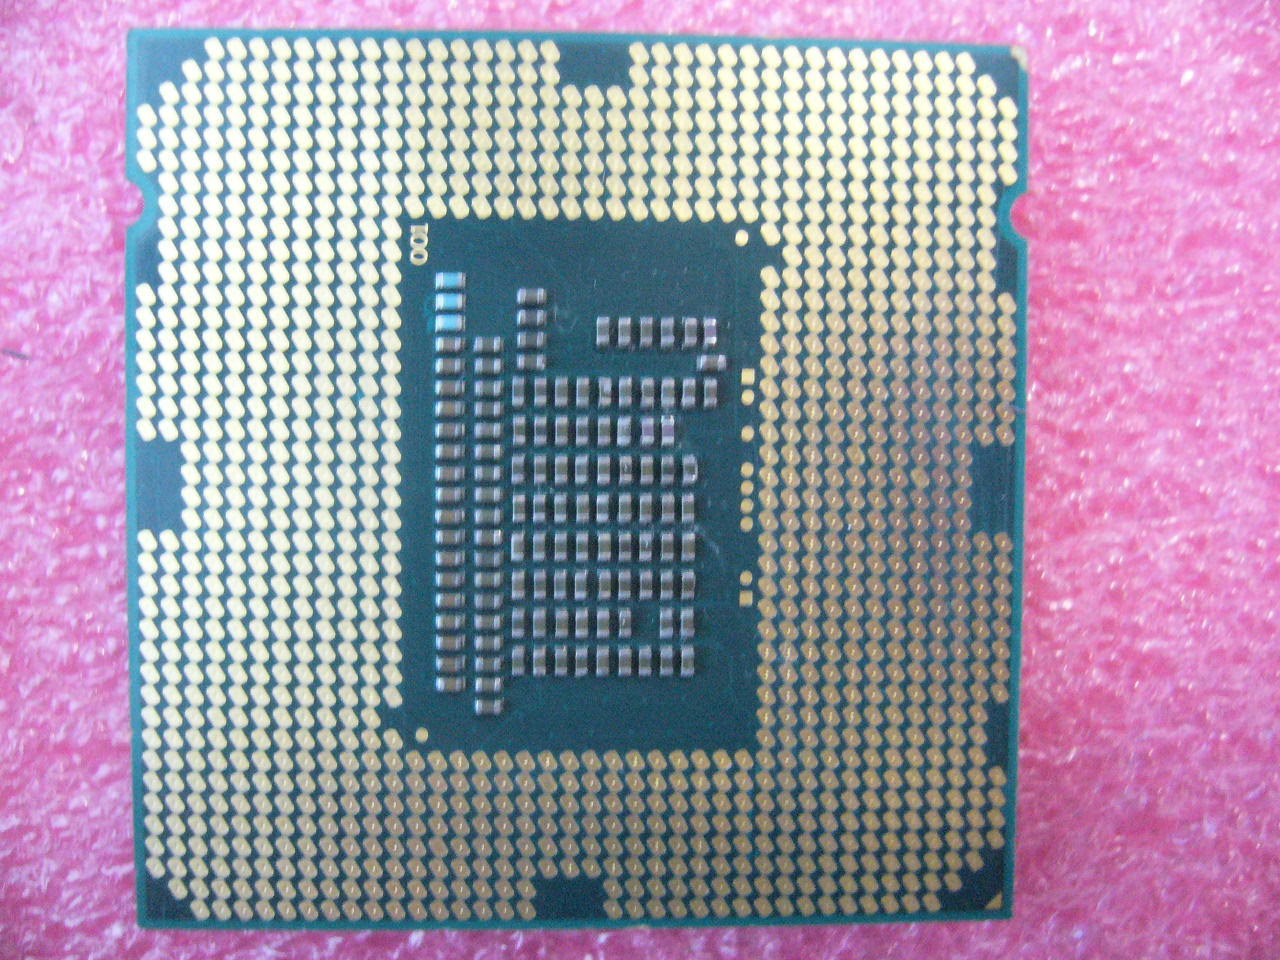 QTY 1x INTEL Pentium CPU G2020 2.9GHZ/3MB LGA1155 SR10H - Click Image to Close